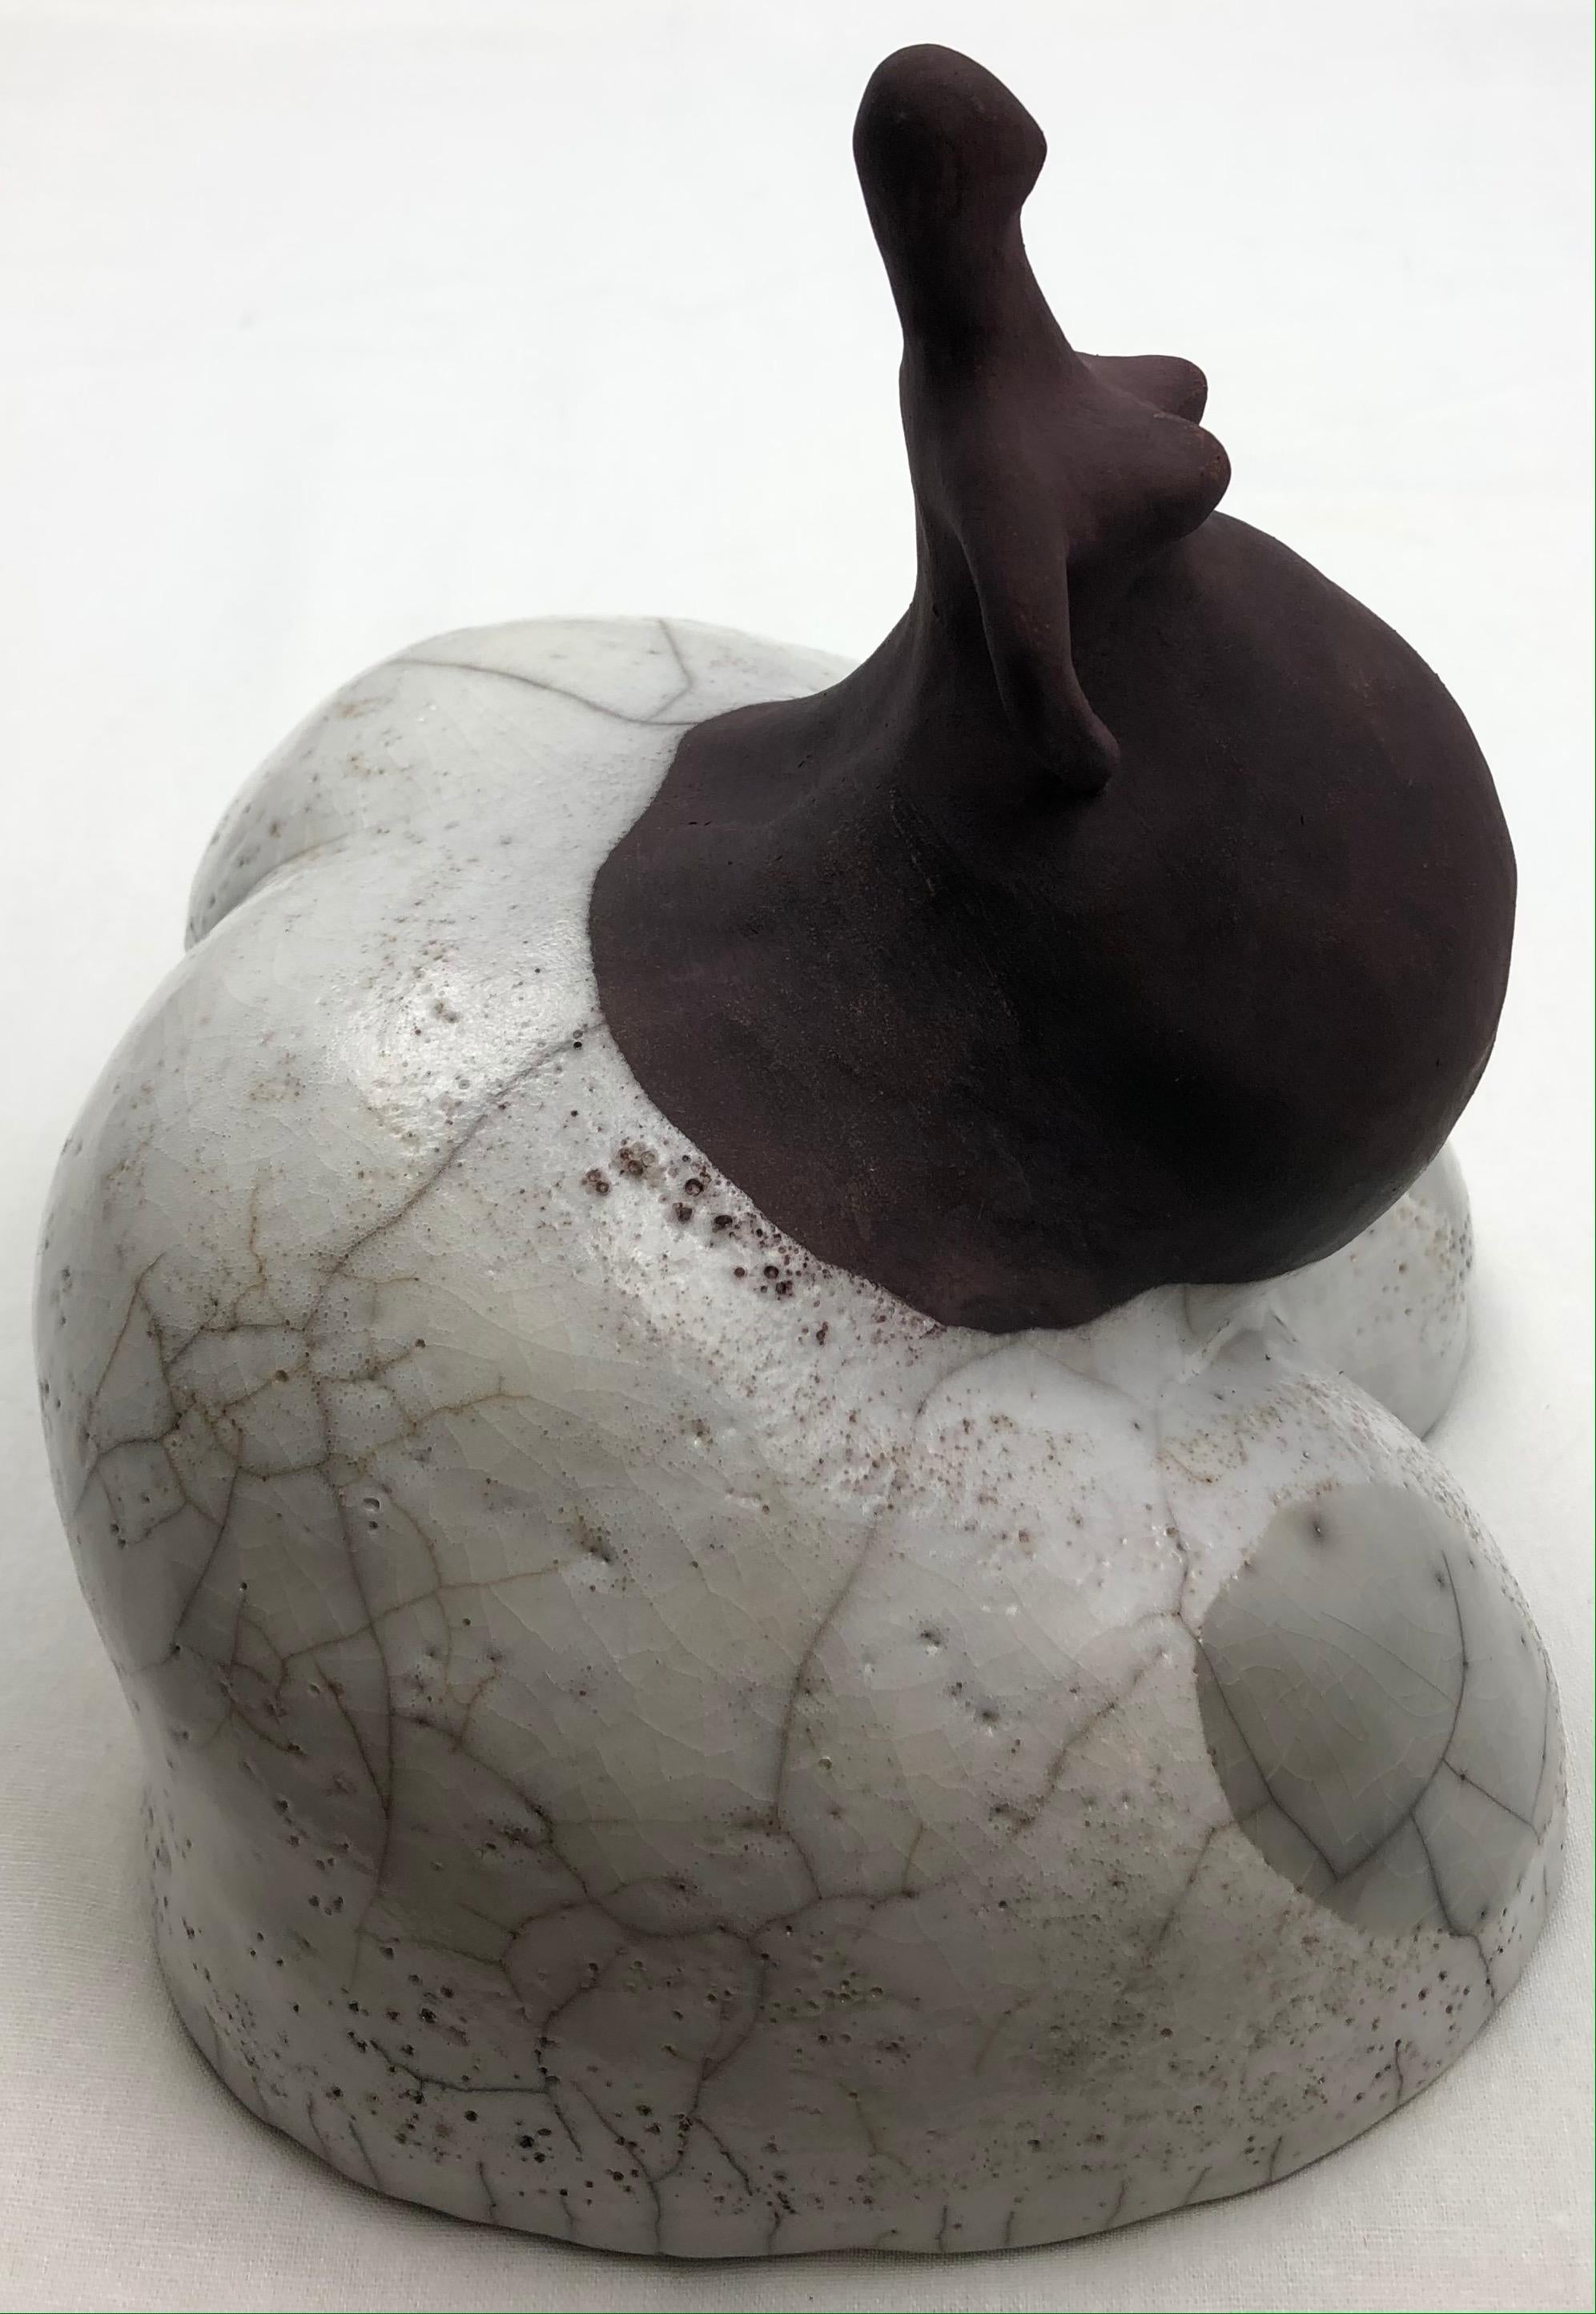 White Crackle Raku gebrannt glasierte schwangere Frau Skulptur.

Diese figurative Skulptur wurde aus einer Kombination von weißem Steingut und Porzellan hergestellt. Dadurch kann das Stück sehr schnell auf eine hohe Temperatur gebrannt werden, so